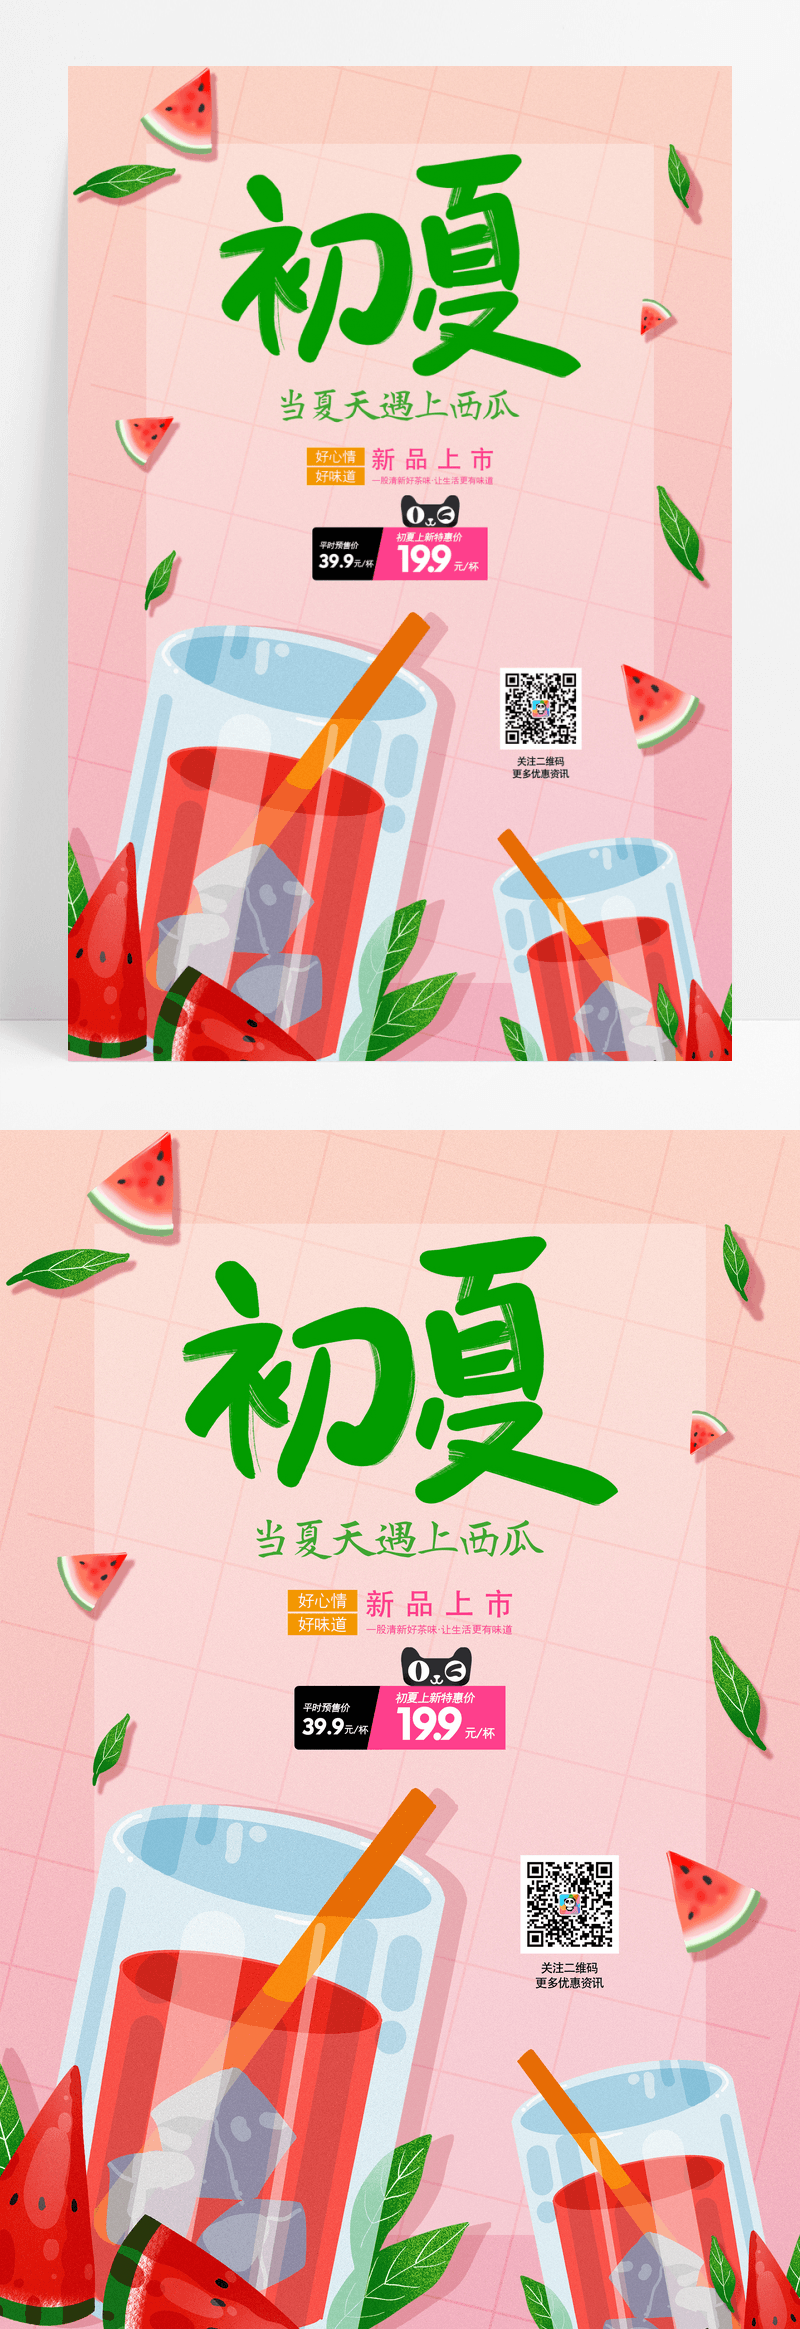 小清新初夏西瓜饮品宣传海报